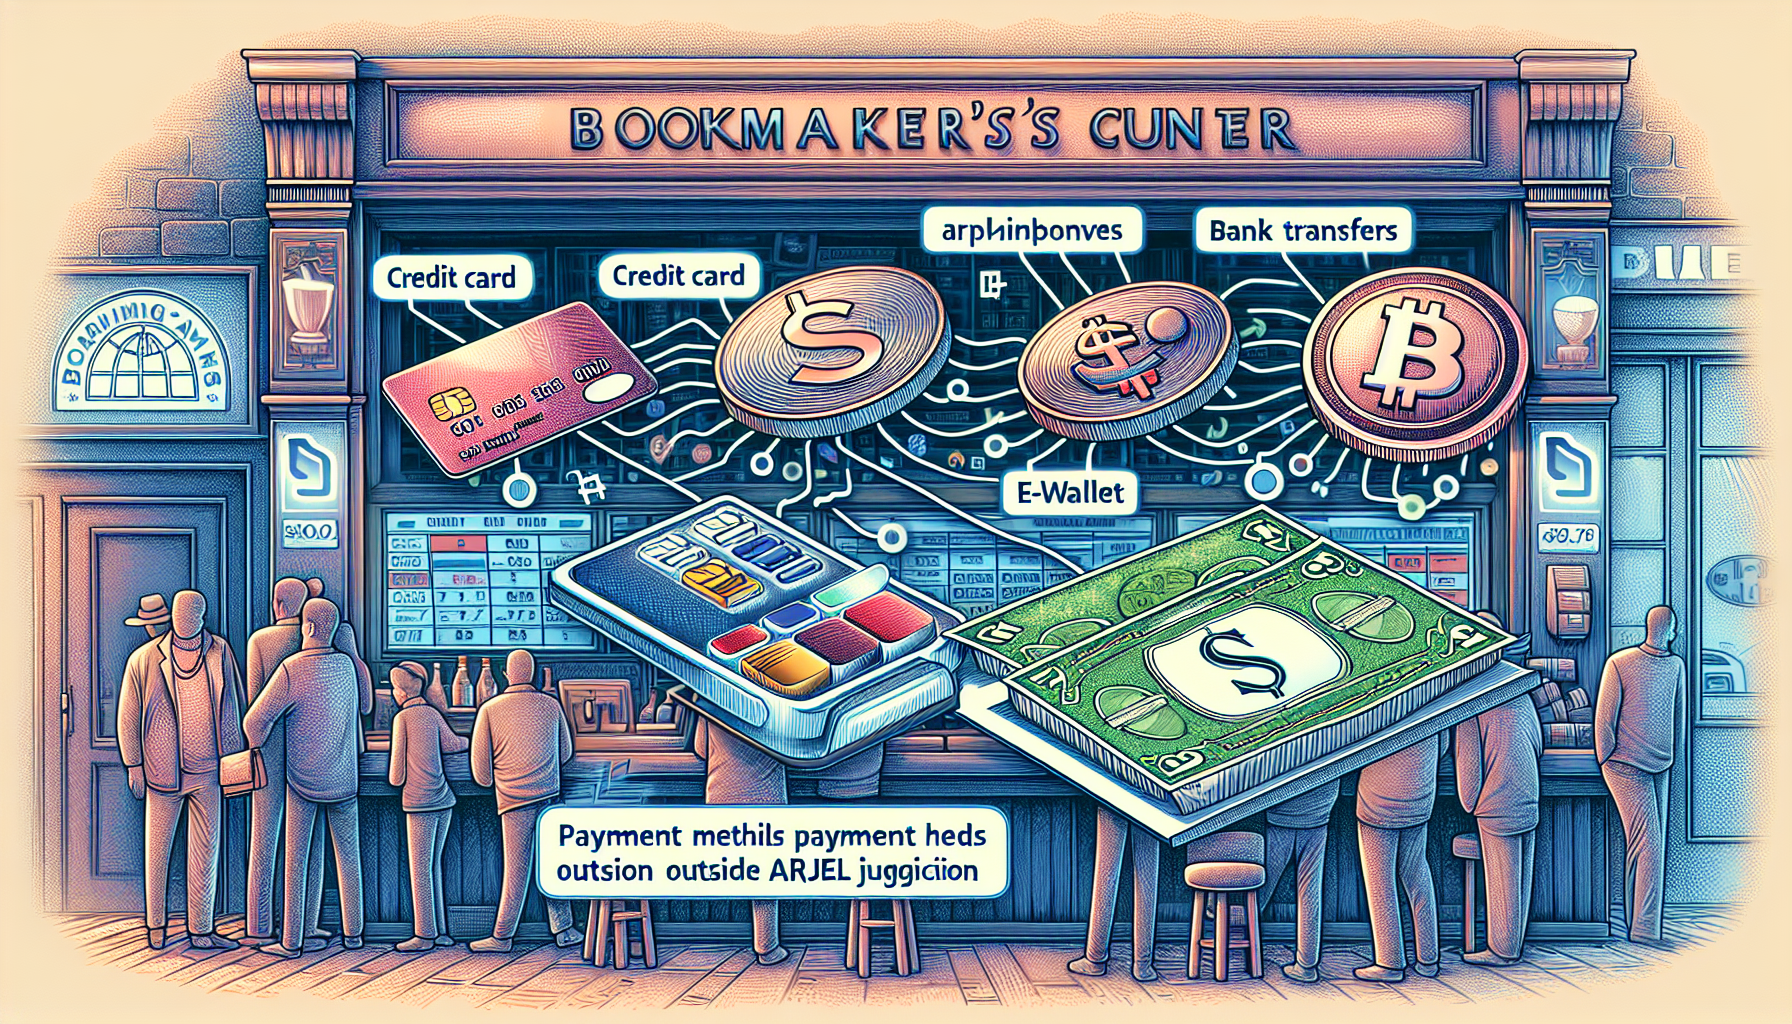 Diverses méthodes de paiement chez les bookmakers hors ARJEL